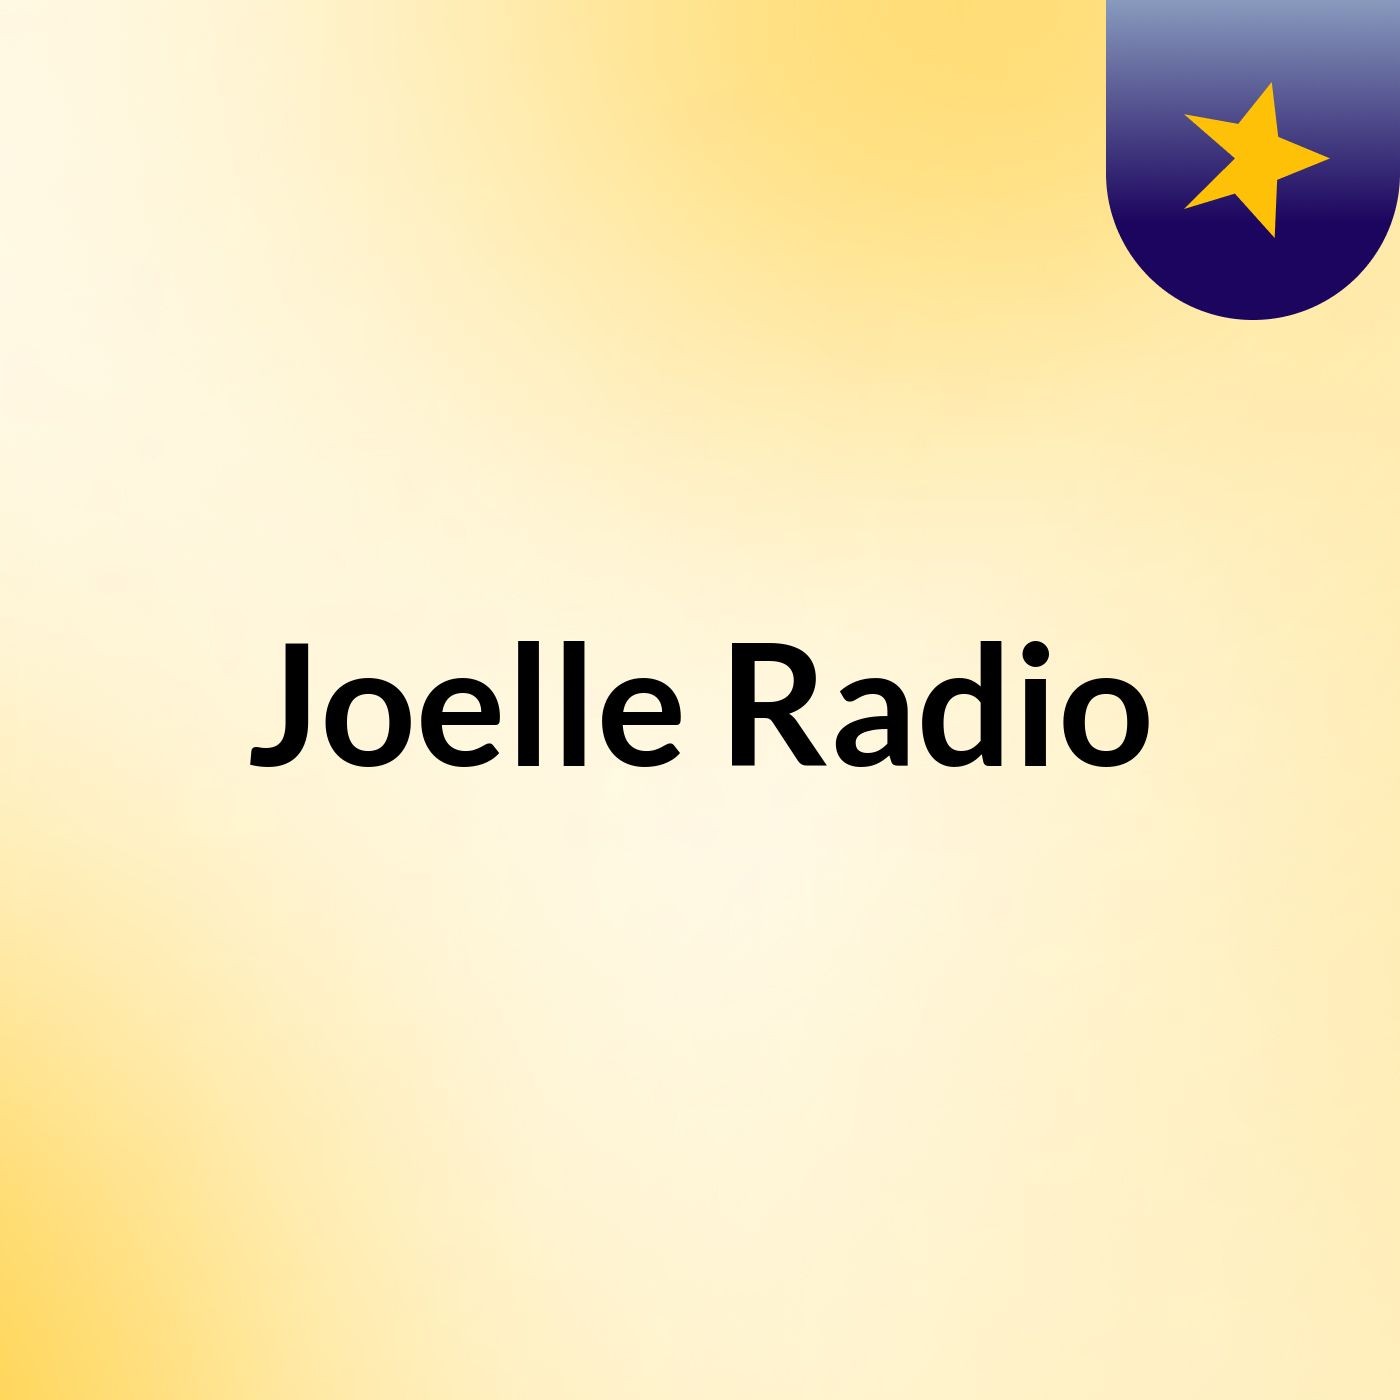 Joelle Radio